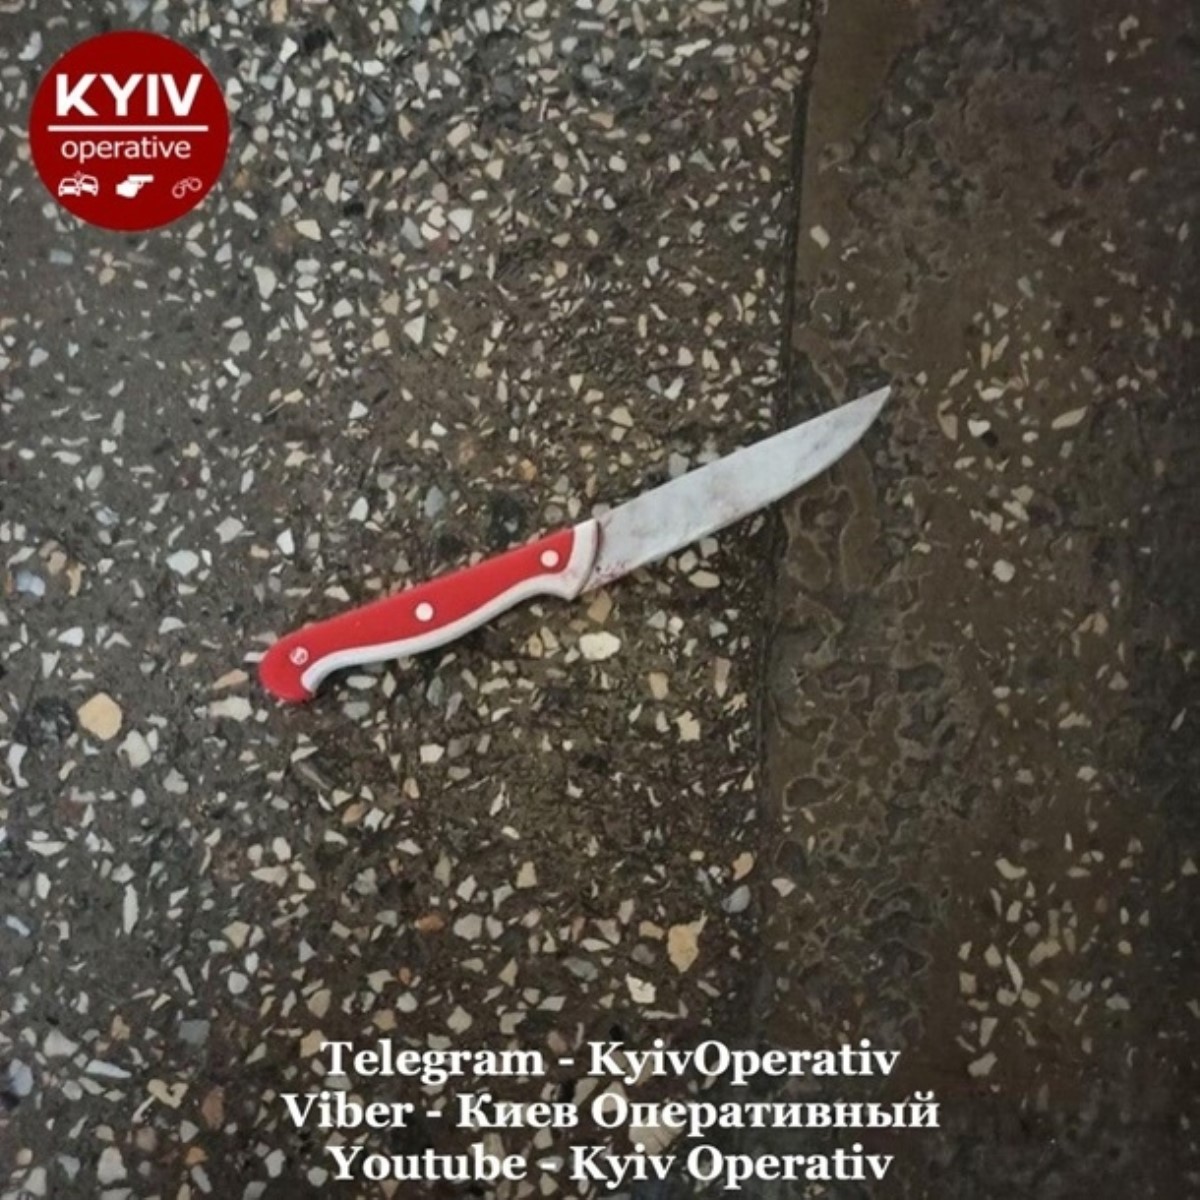 Пациенты киевской больницы утроили поножовщину